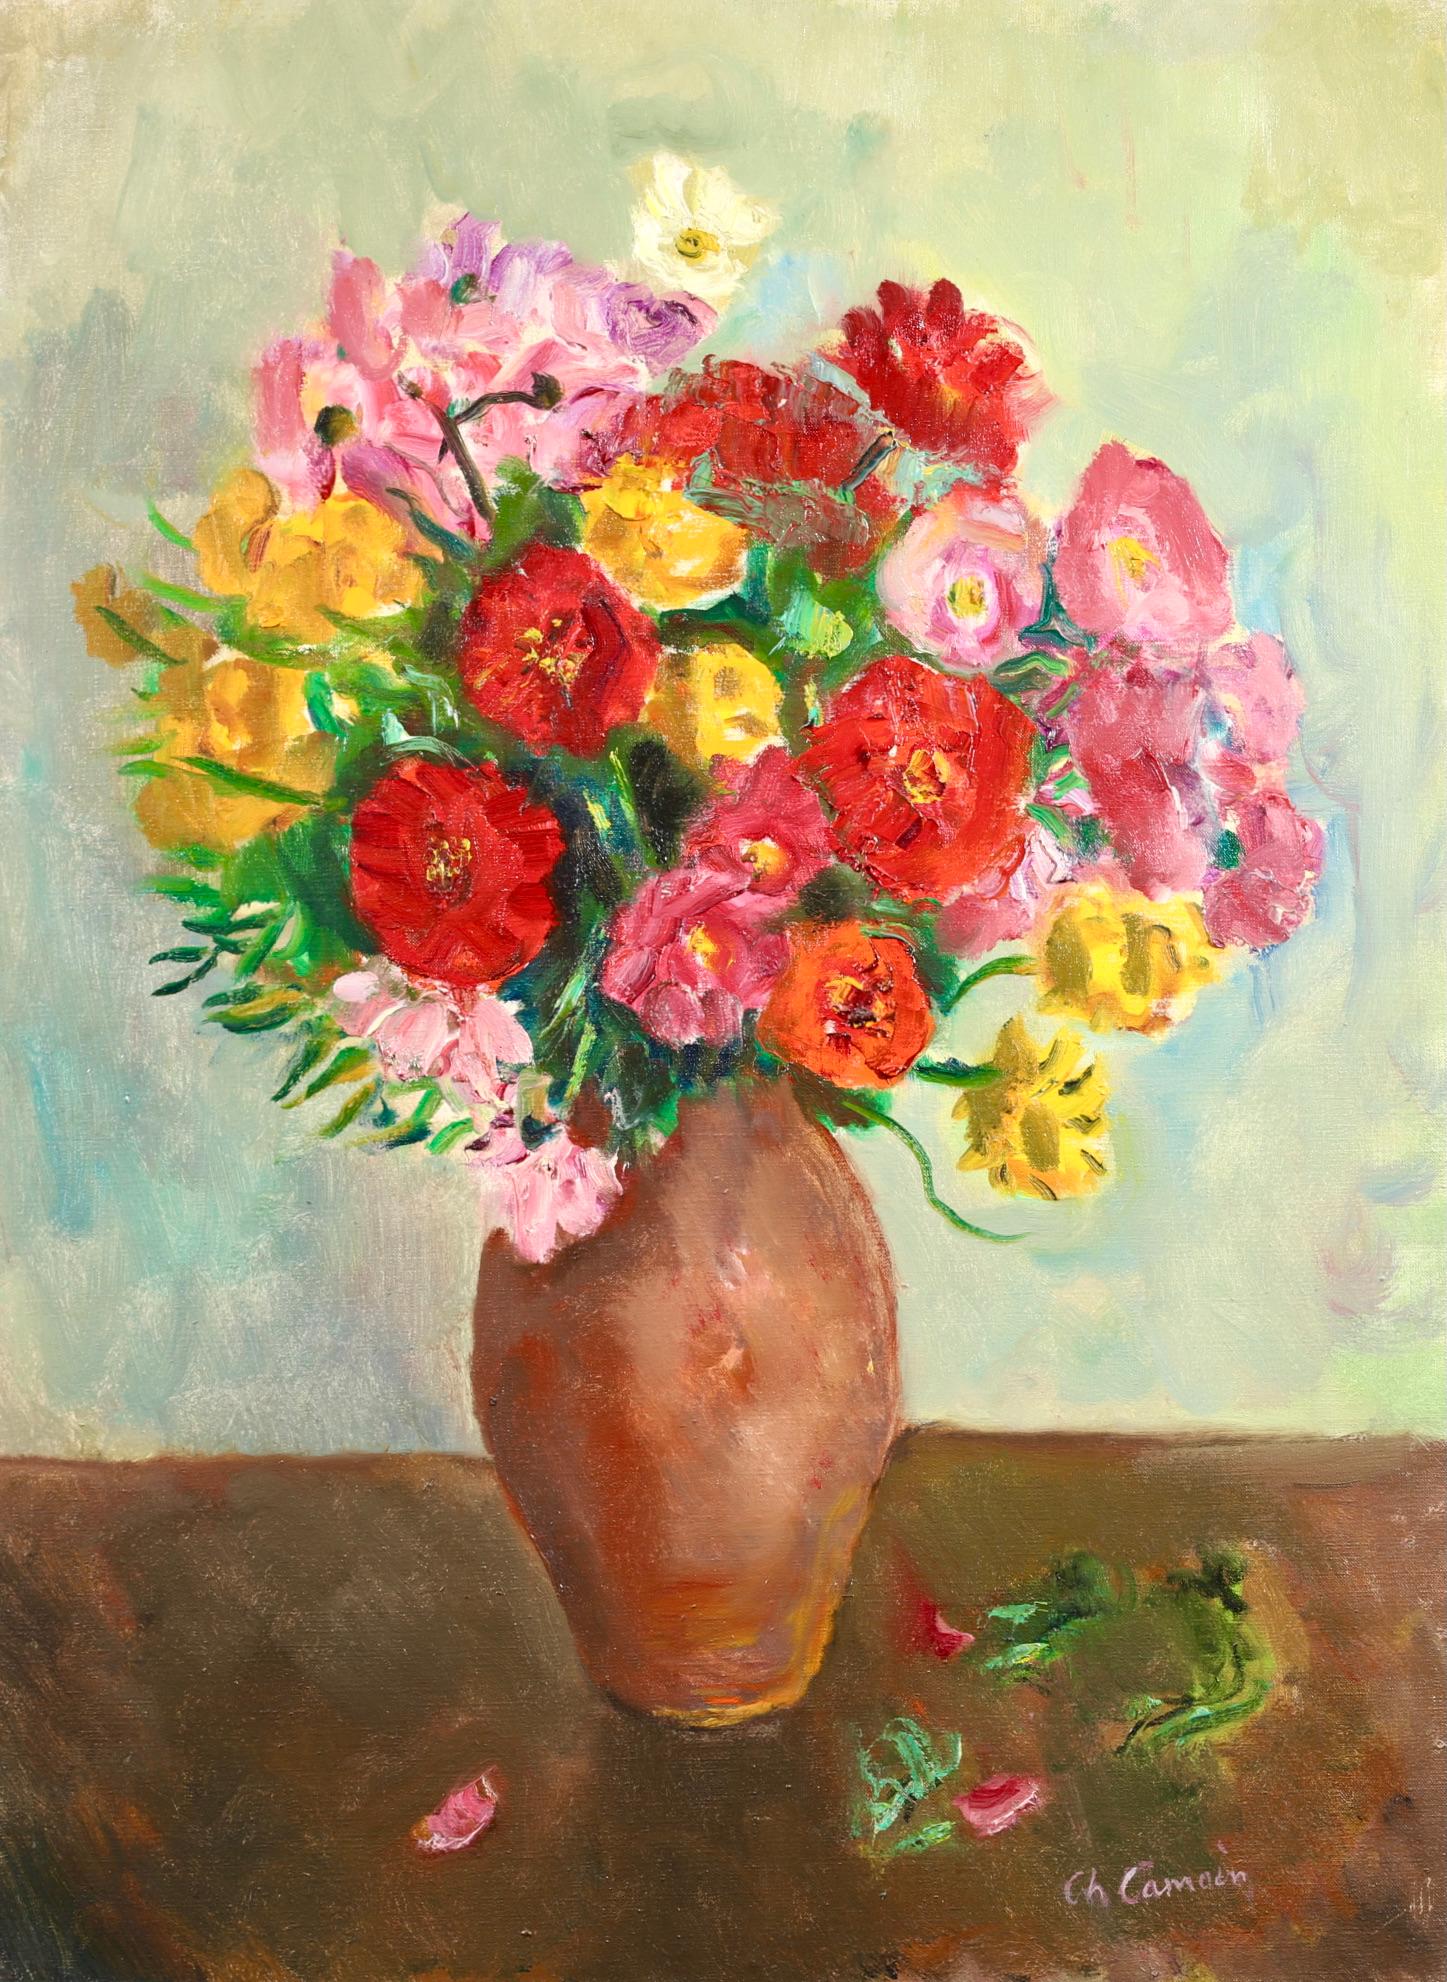 Nature morte signée, huile sur toile du peintre expressionniste et fauviste français Charles Camoin. L'œuvre représente un bouquet de fleurs aux couleurs vives (rouge, jaune, bleu et rose) dans un vase en grès. 

Signature :
Signé en bas à